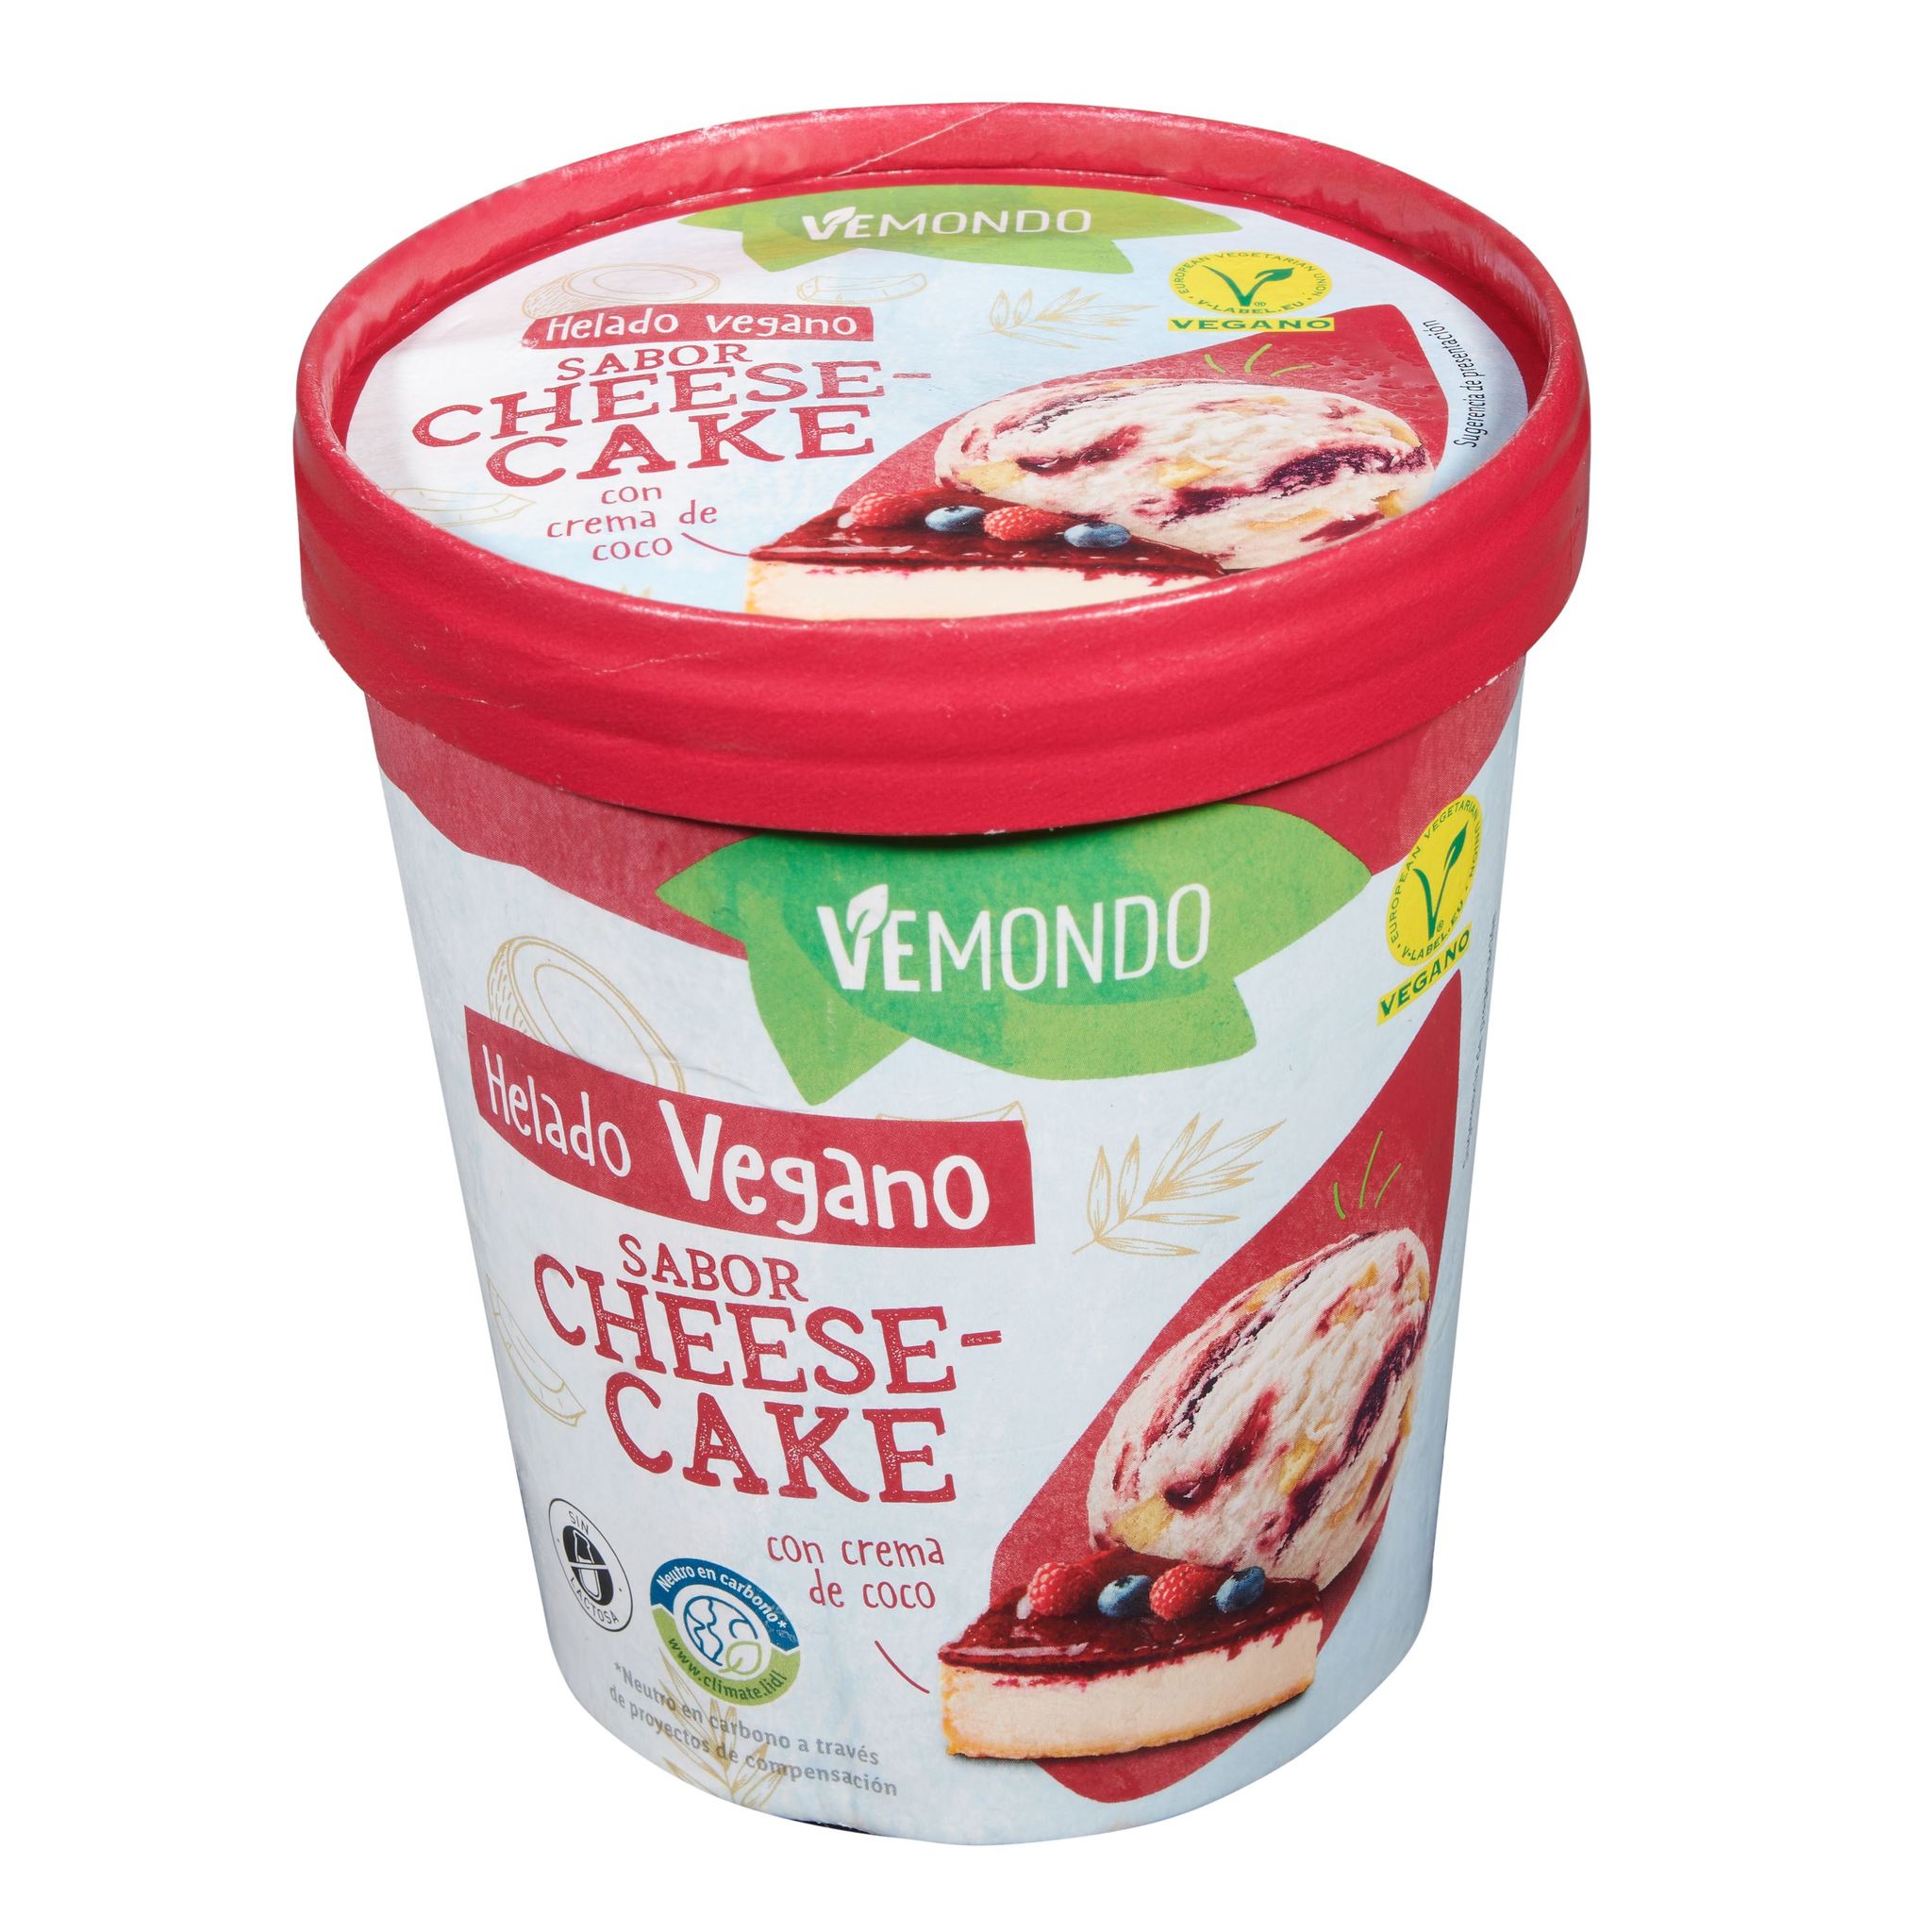 Conseguir que un helado vegano sea tan cremoso y delicioso como uno tradicional no debe ser fácil. Pero, definitivamente, Lidl lo ha conseguido. Vemondo Helado Vegano Sabor Cheese-Cake: 2,99 euros.